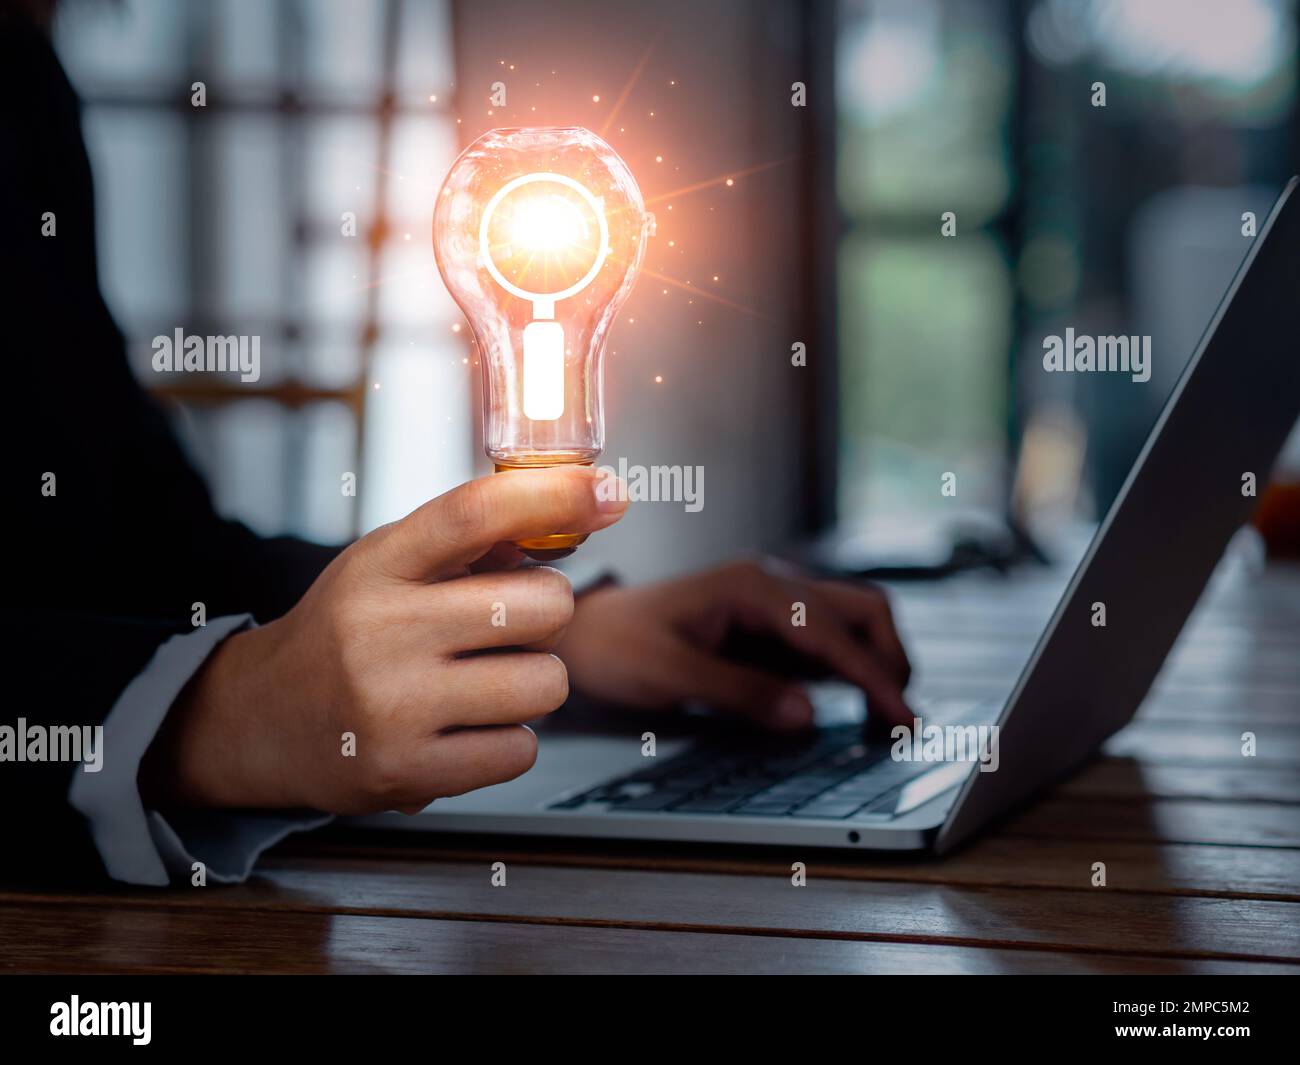 Onlinekonzept wird gesucht. Lupensymbol in einer kreativen Glühbirne, die von einem Geschäftsmann gehalten wird, der mit einem Laptop arbeitet. Digital Stockfoto